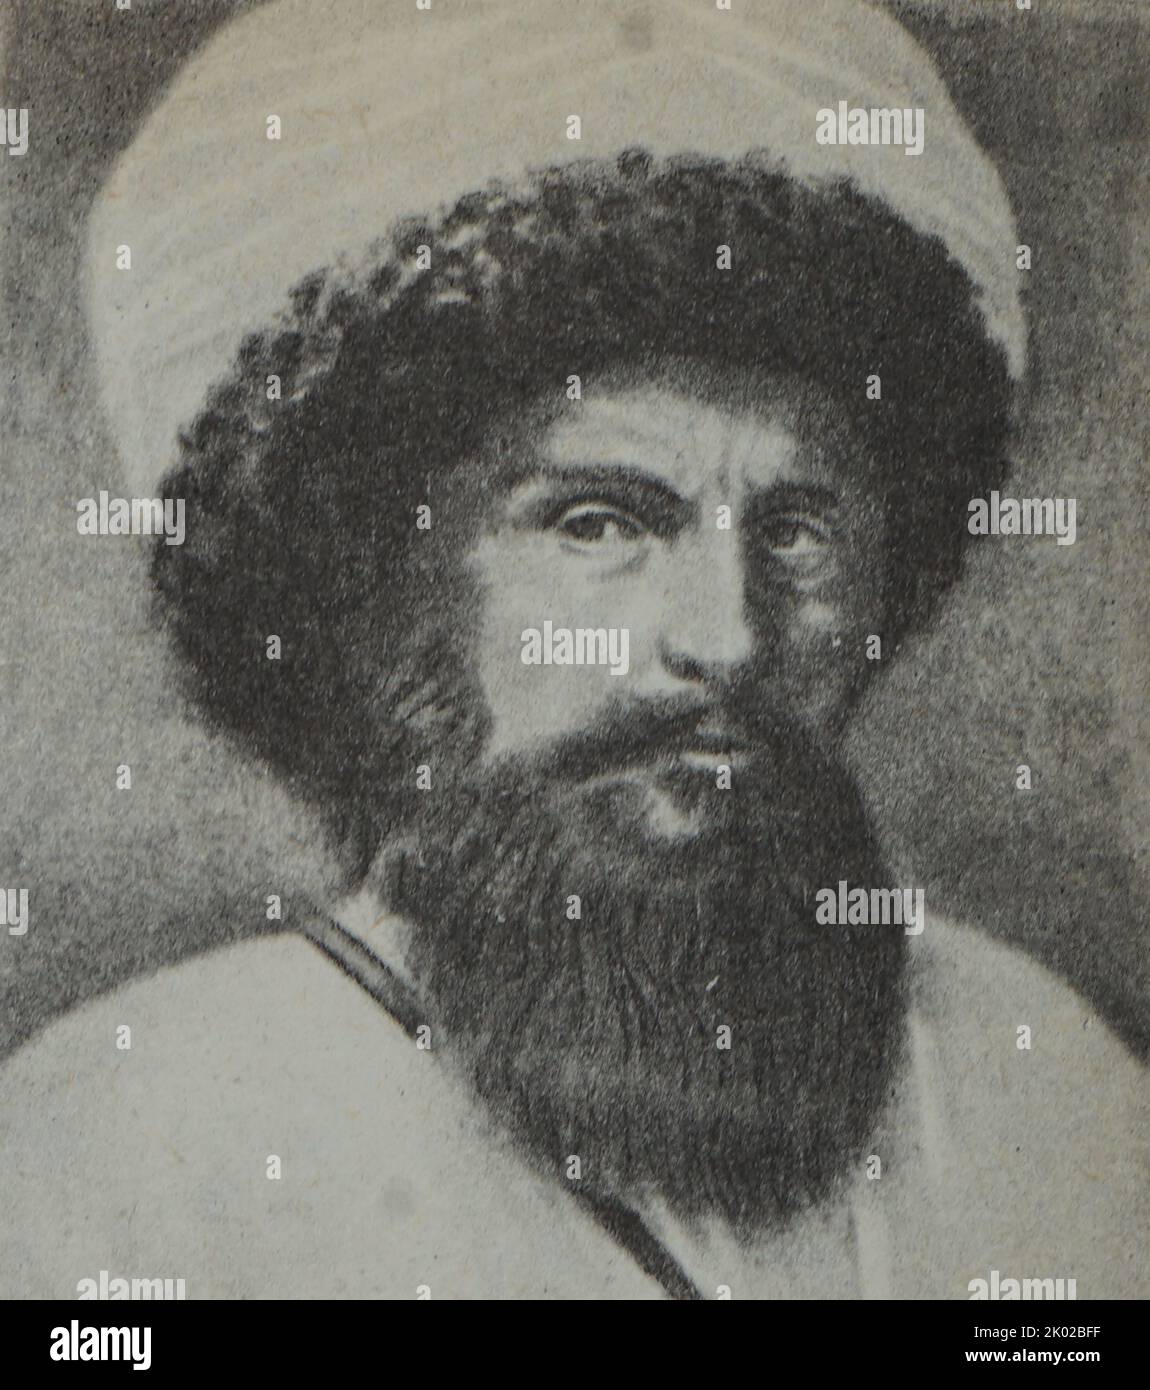 Shamil, 3rd Imam du Dagestan (1797-1871), chef de la résistance à la domination russe sur le Caucase Banque D'Images